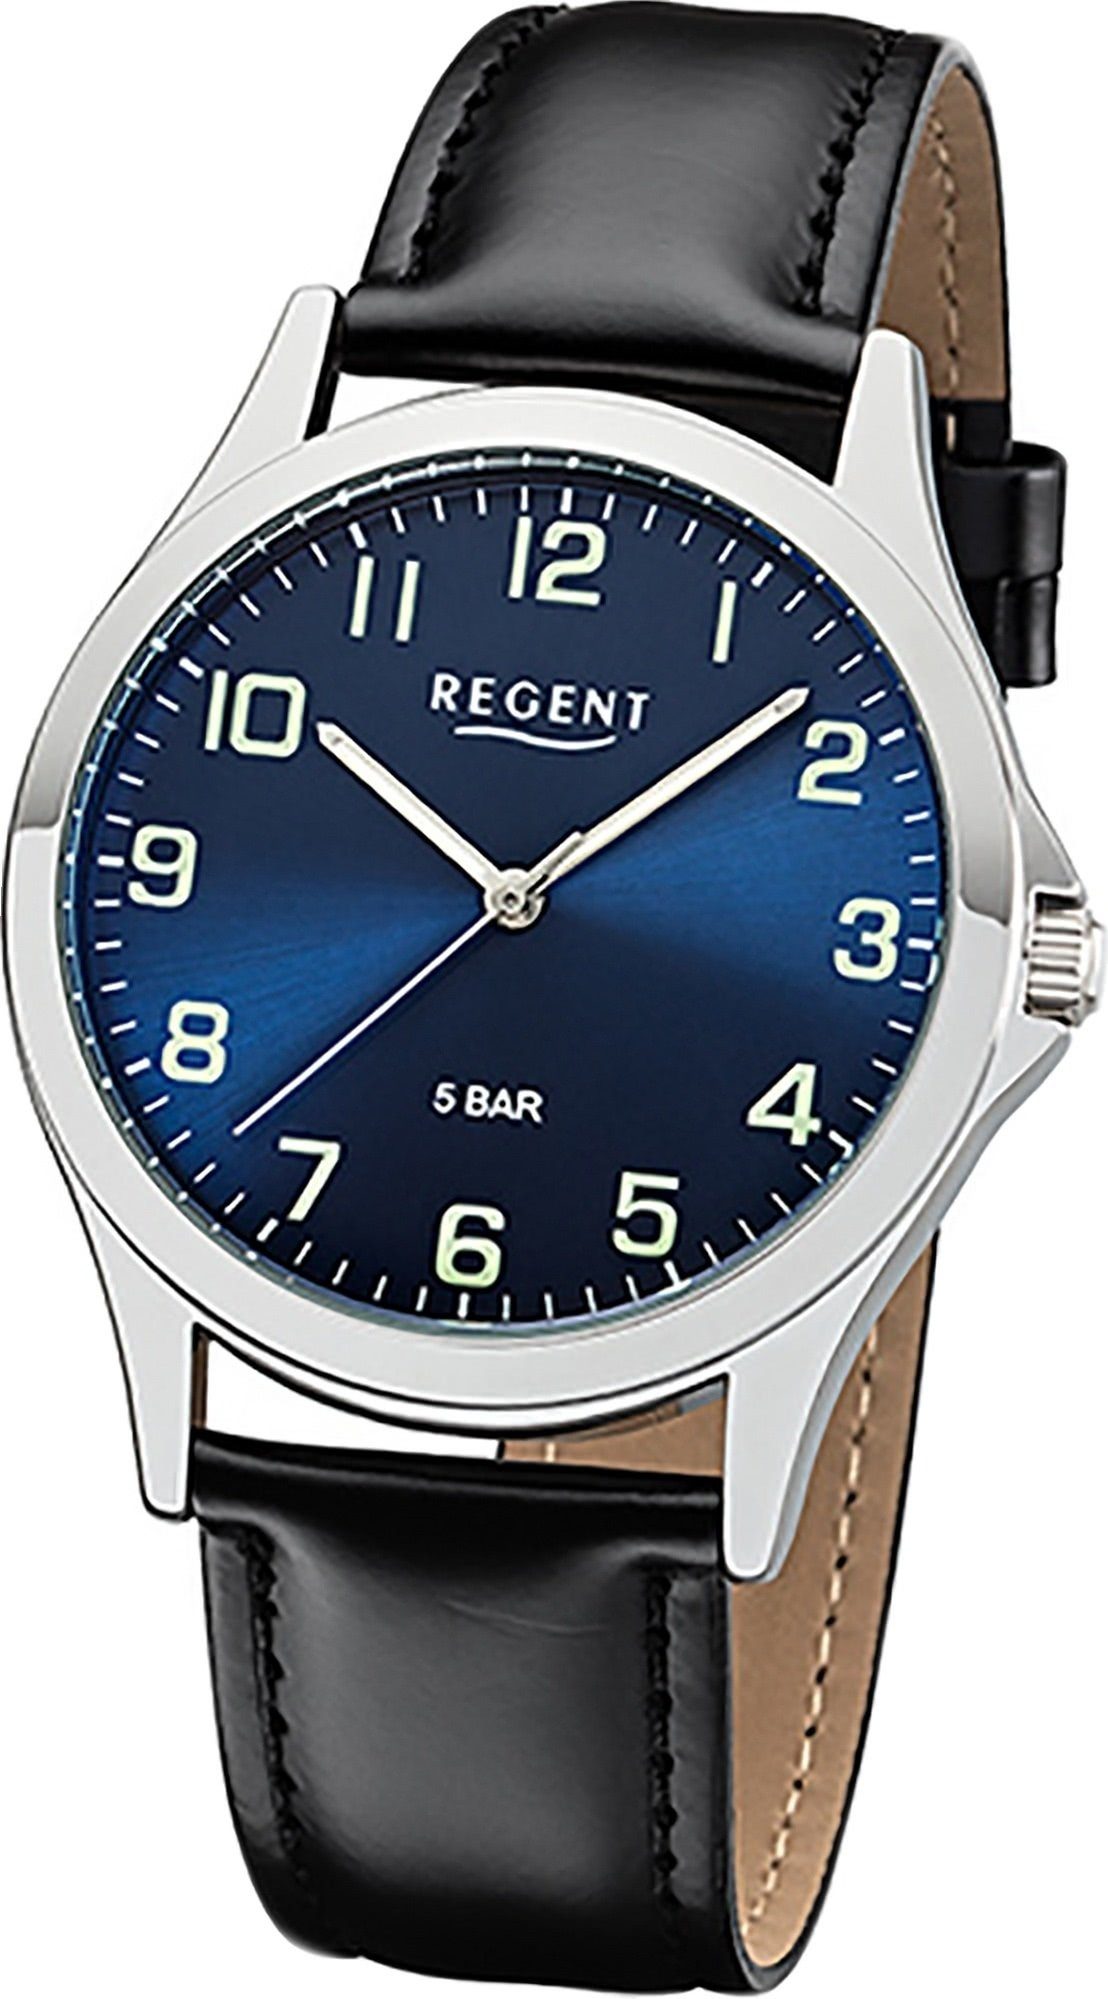 Regent Quarzuhr Regent Leder Herren Uhr 1112421 Analog, Herrenuhr Lederarmband schwarz, rundes Gehäuse, mittel (ca. 39mm)